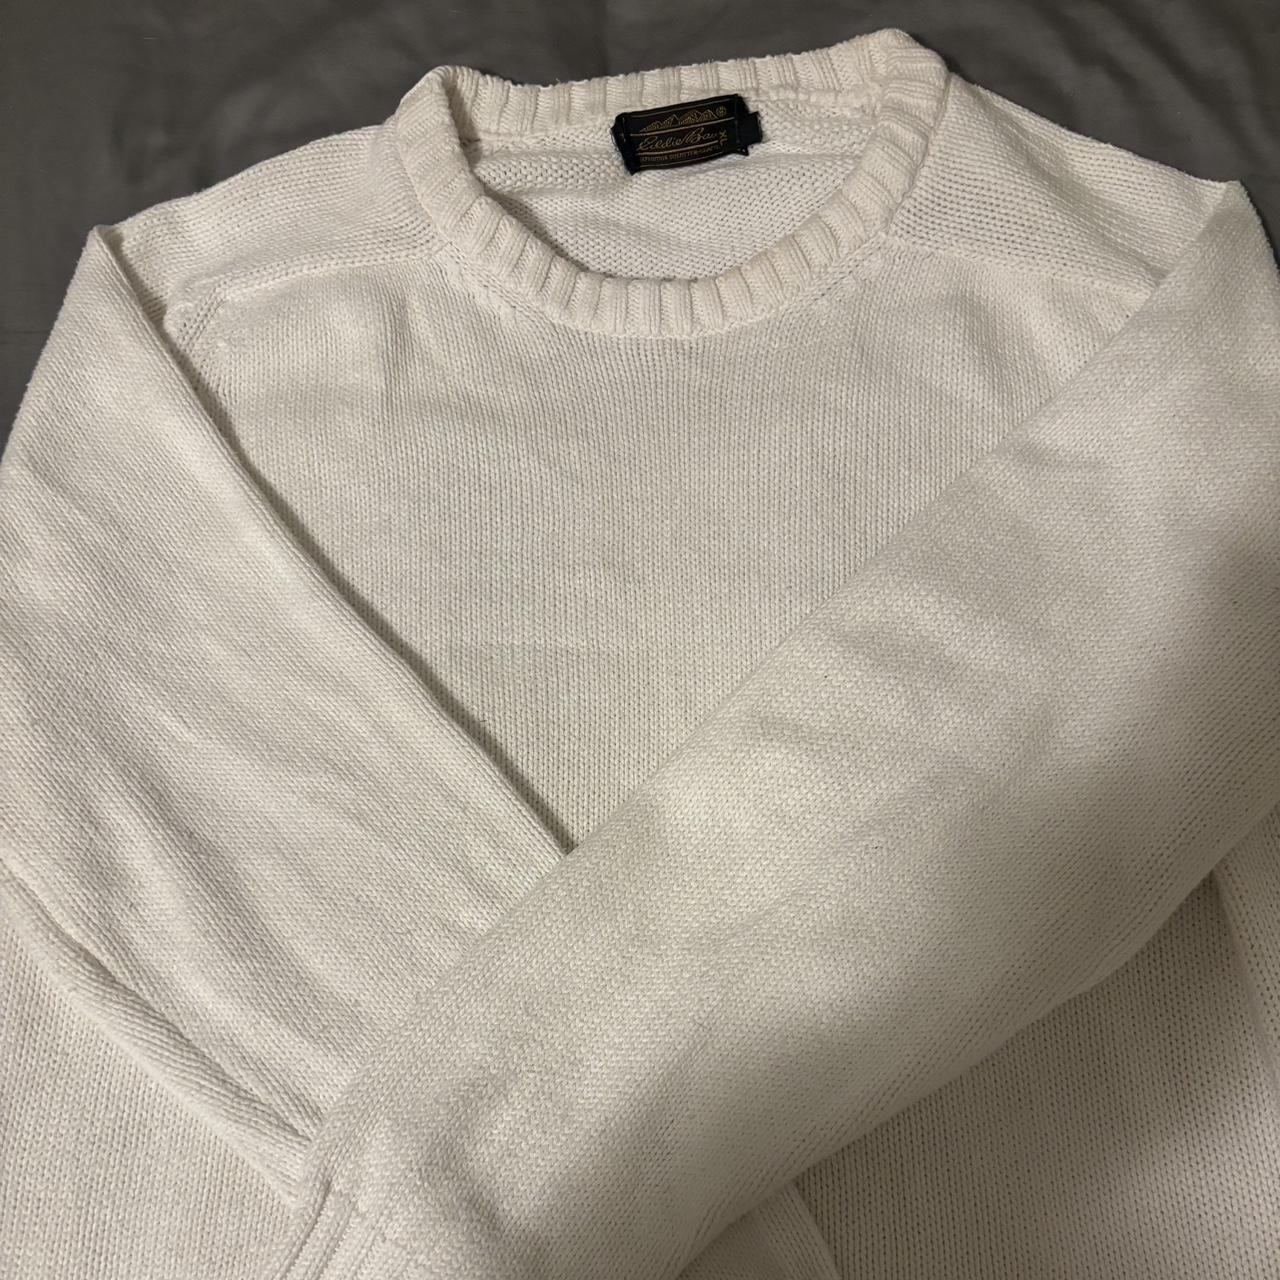 eddie bauer white sweater, very good quality 🤍 - Depop